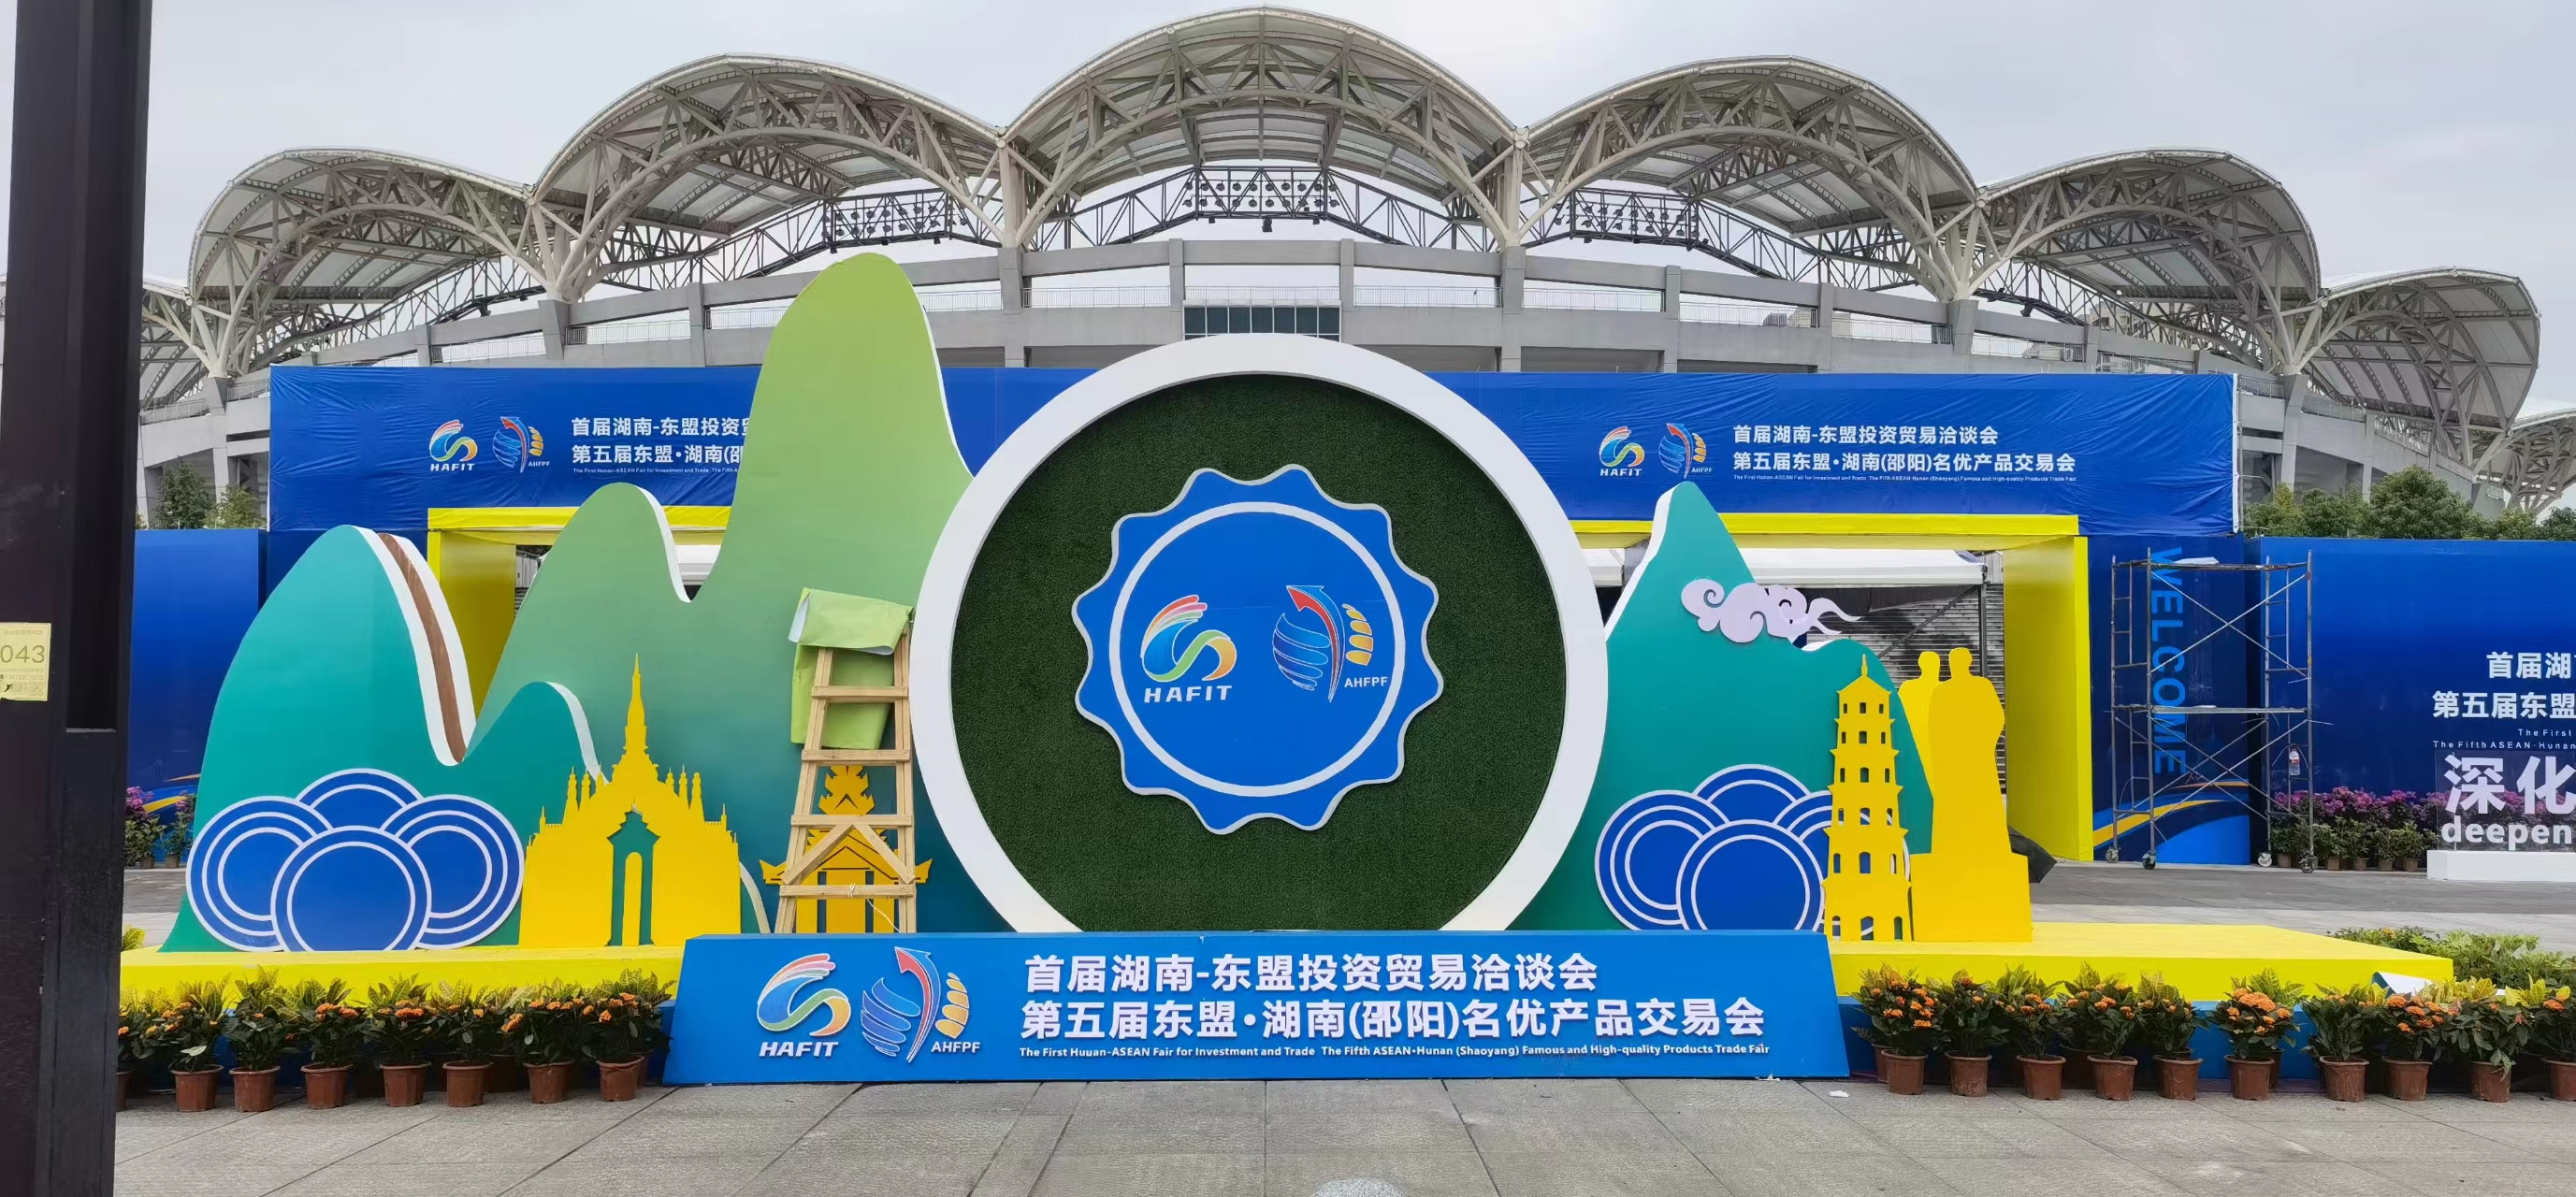 Panairi i Parë i Investimeve dhe Tregtisë Hunan-ASEAN u hap në Shaoyang